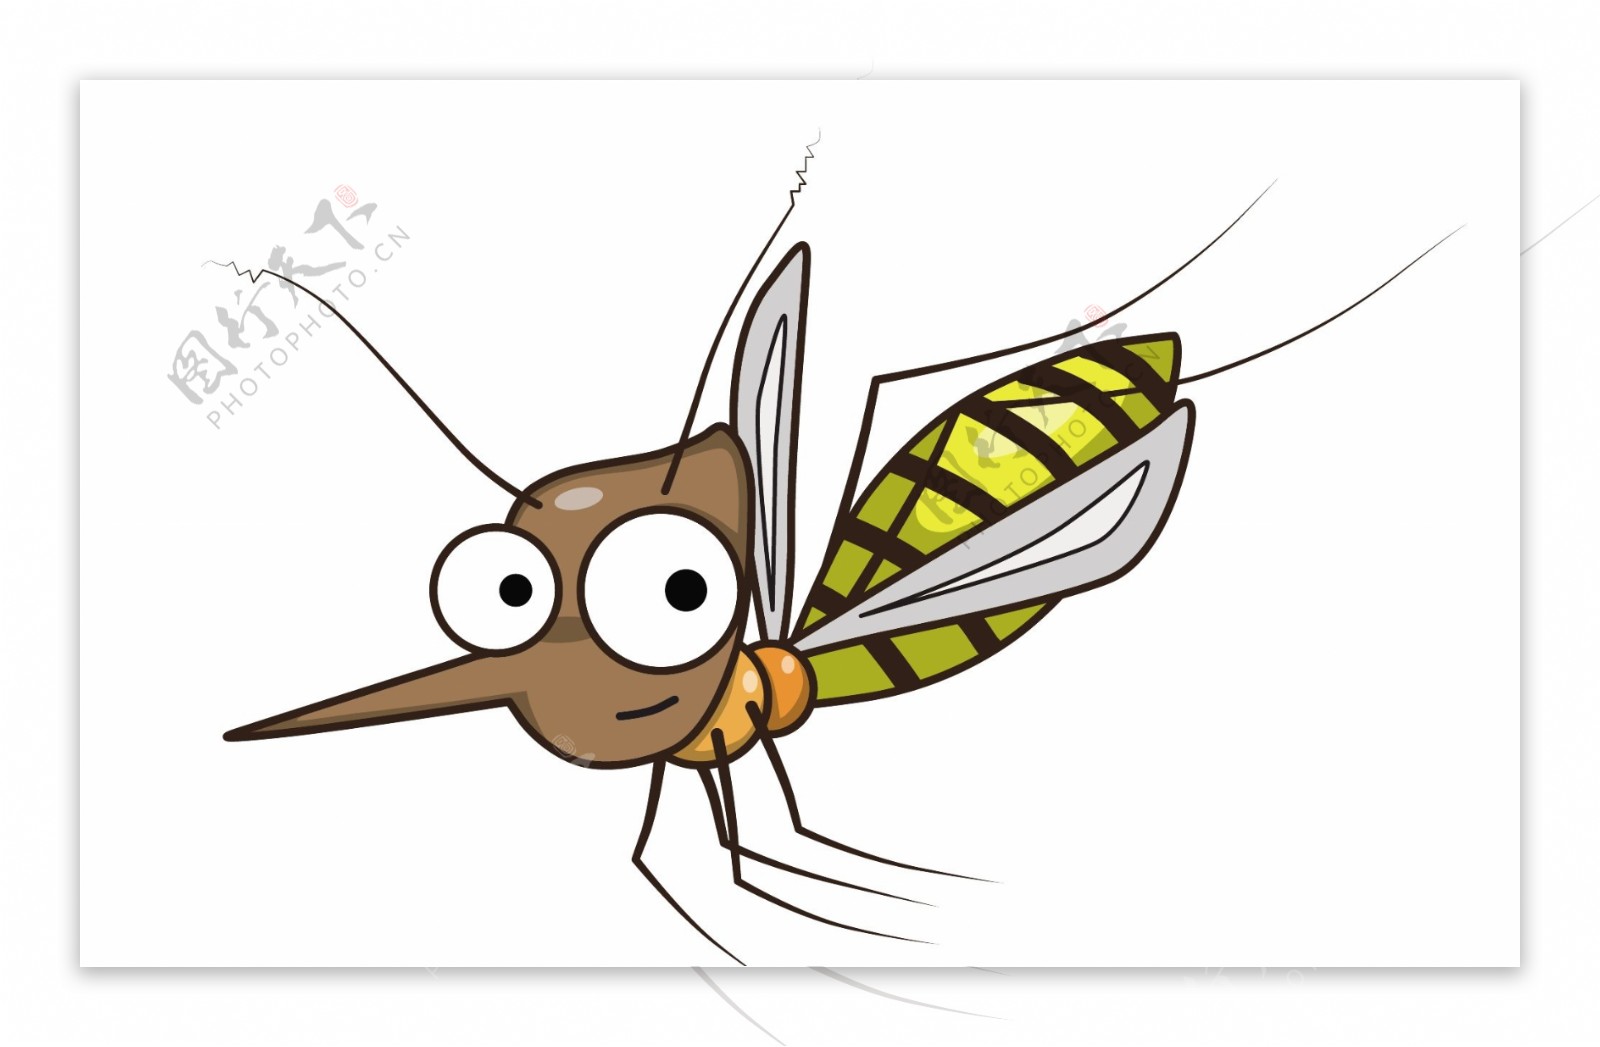 可爱的卡通蚊子图片-商业图片-正版原创图片下载购买-VEER图片库